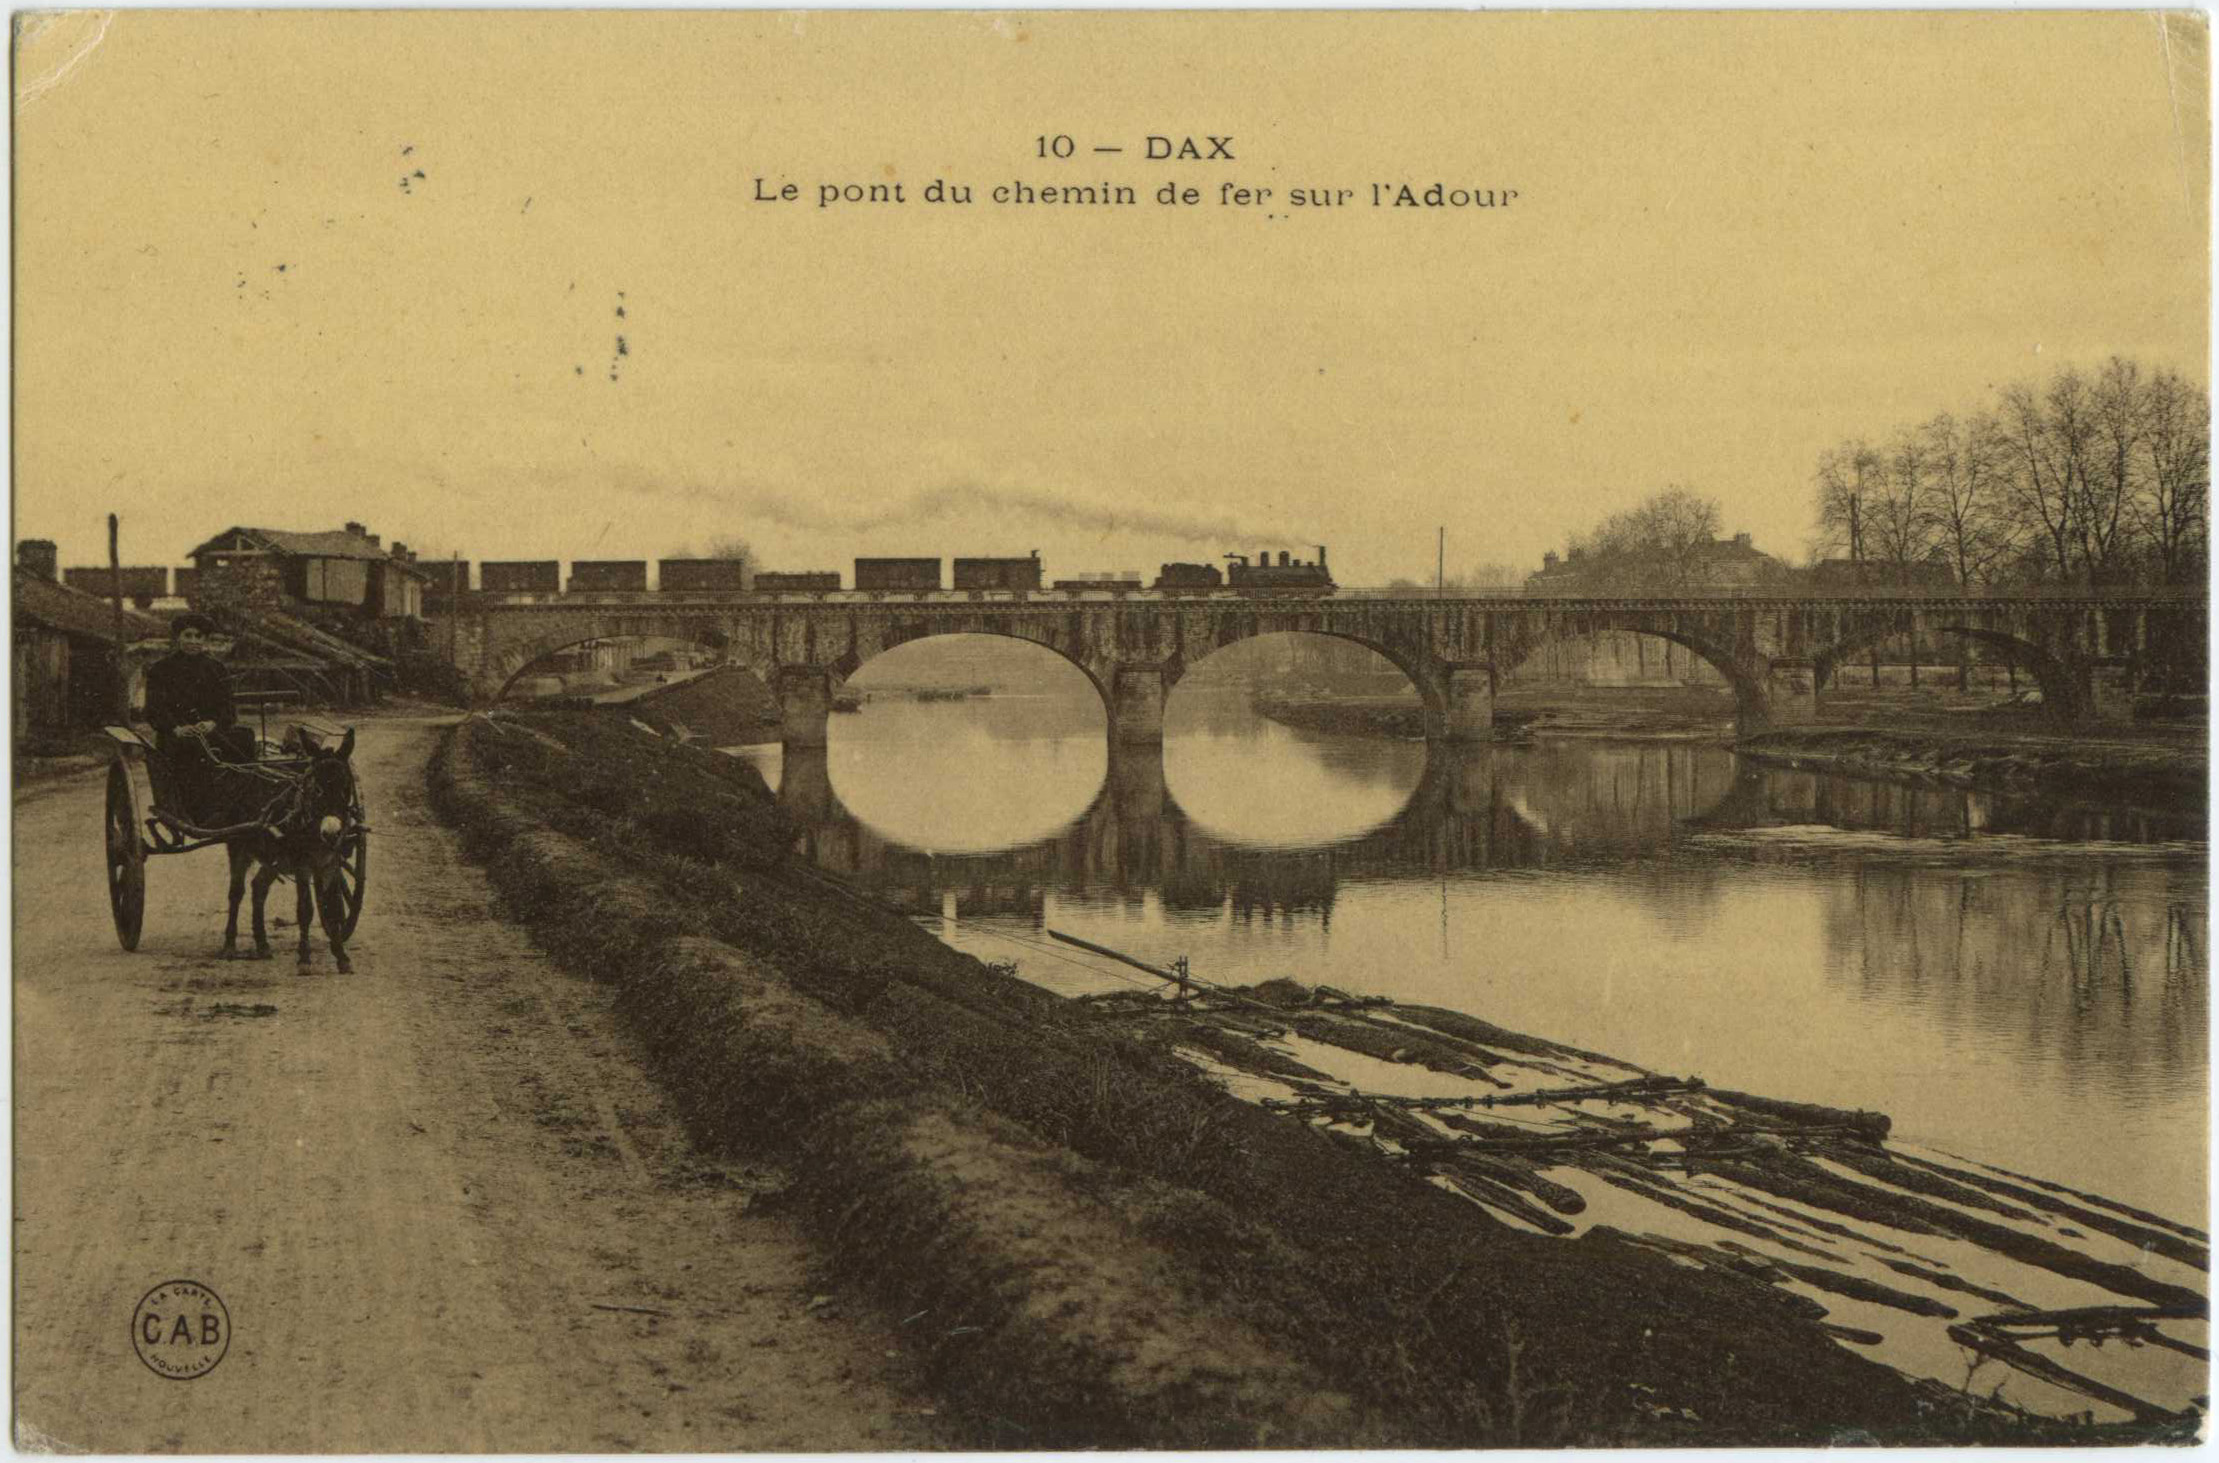 Dax - Le pont du chemin de fer sur l'Adour